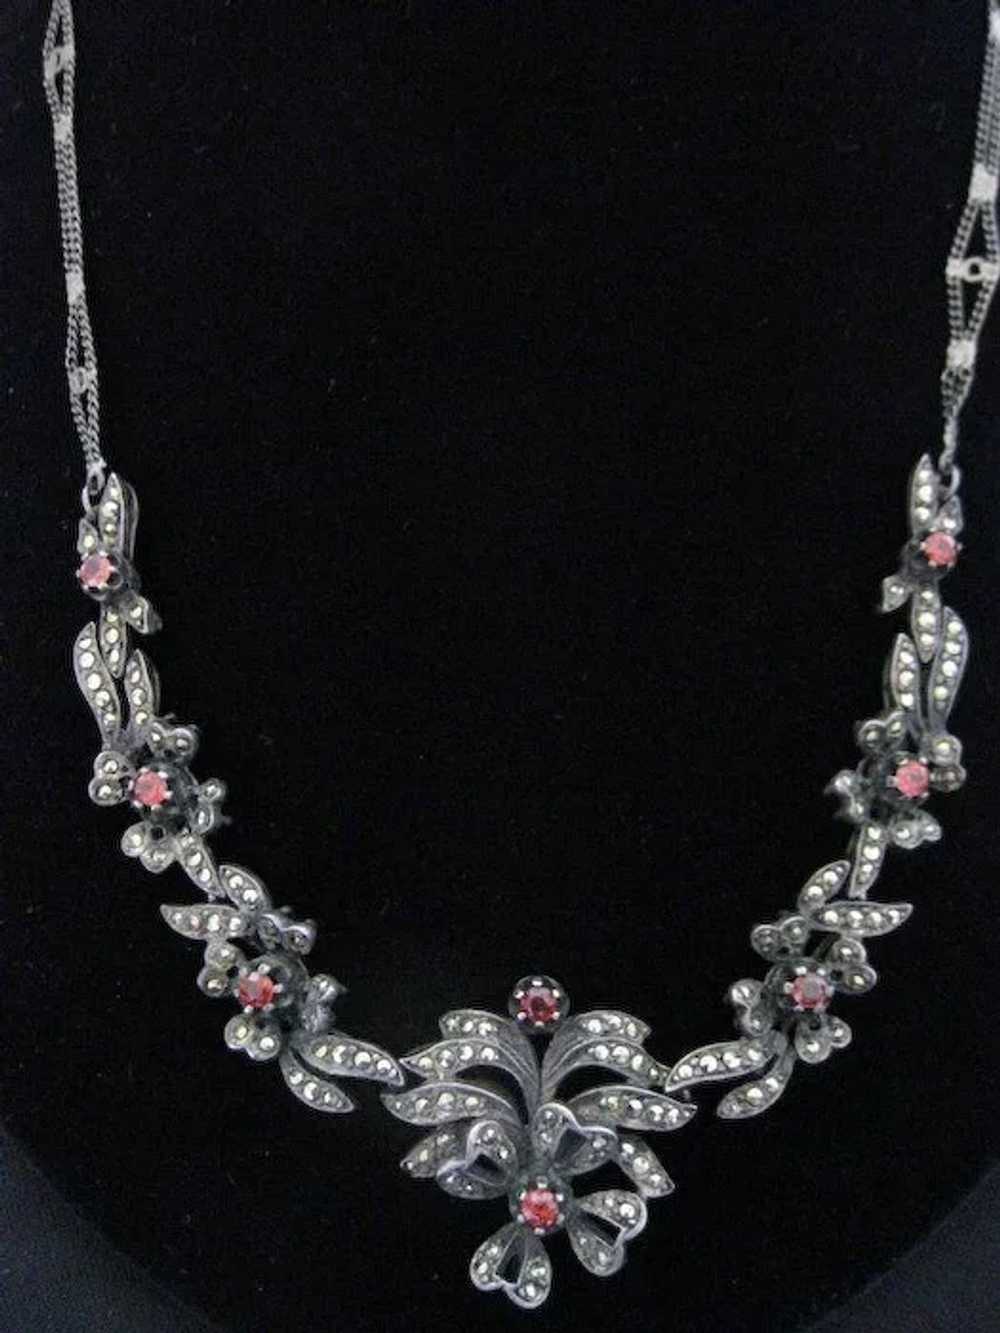 Rare Antique Spessartite Garnet Necklace - image 3